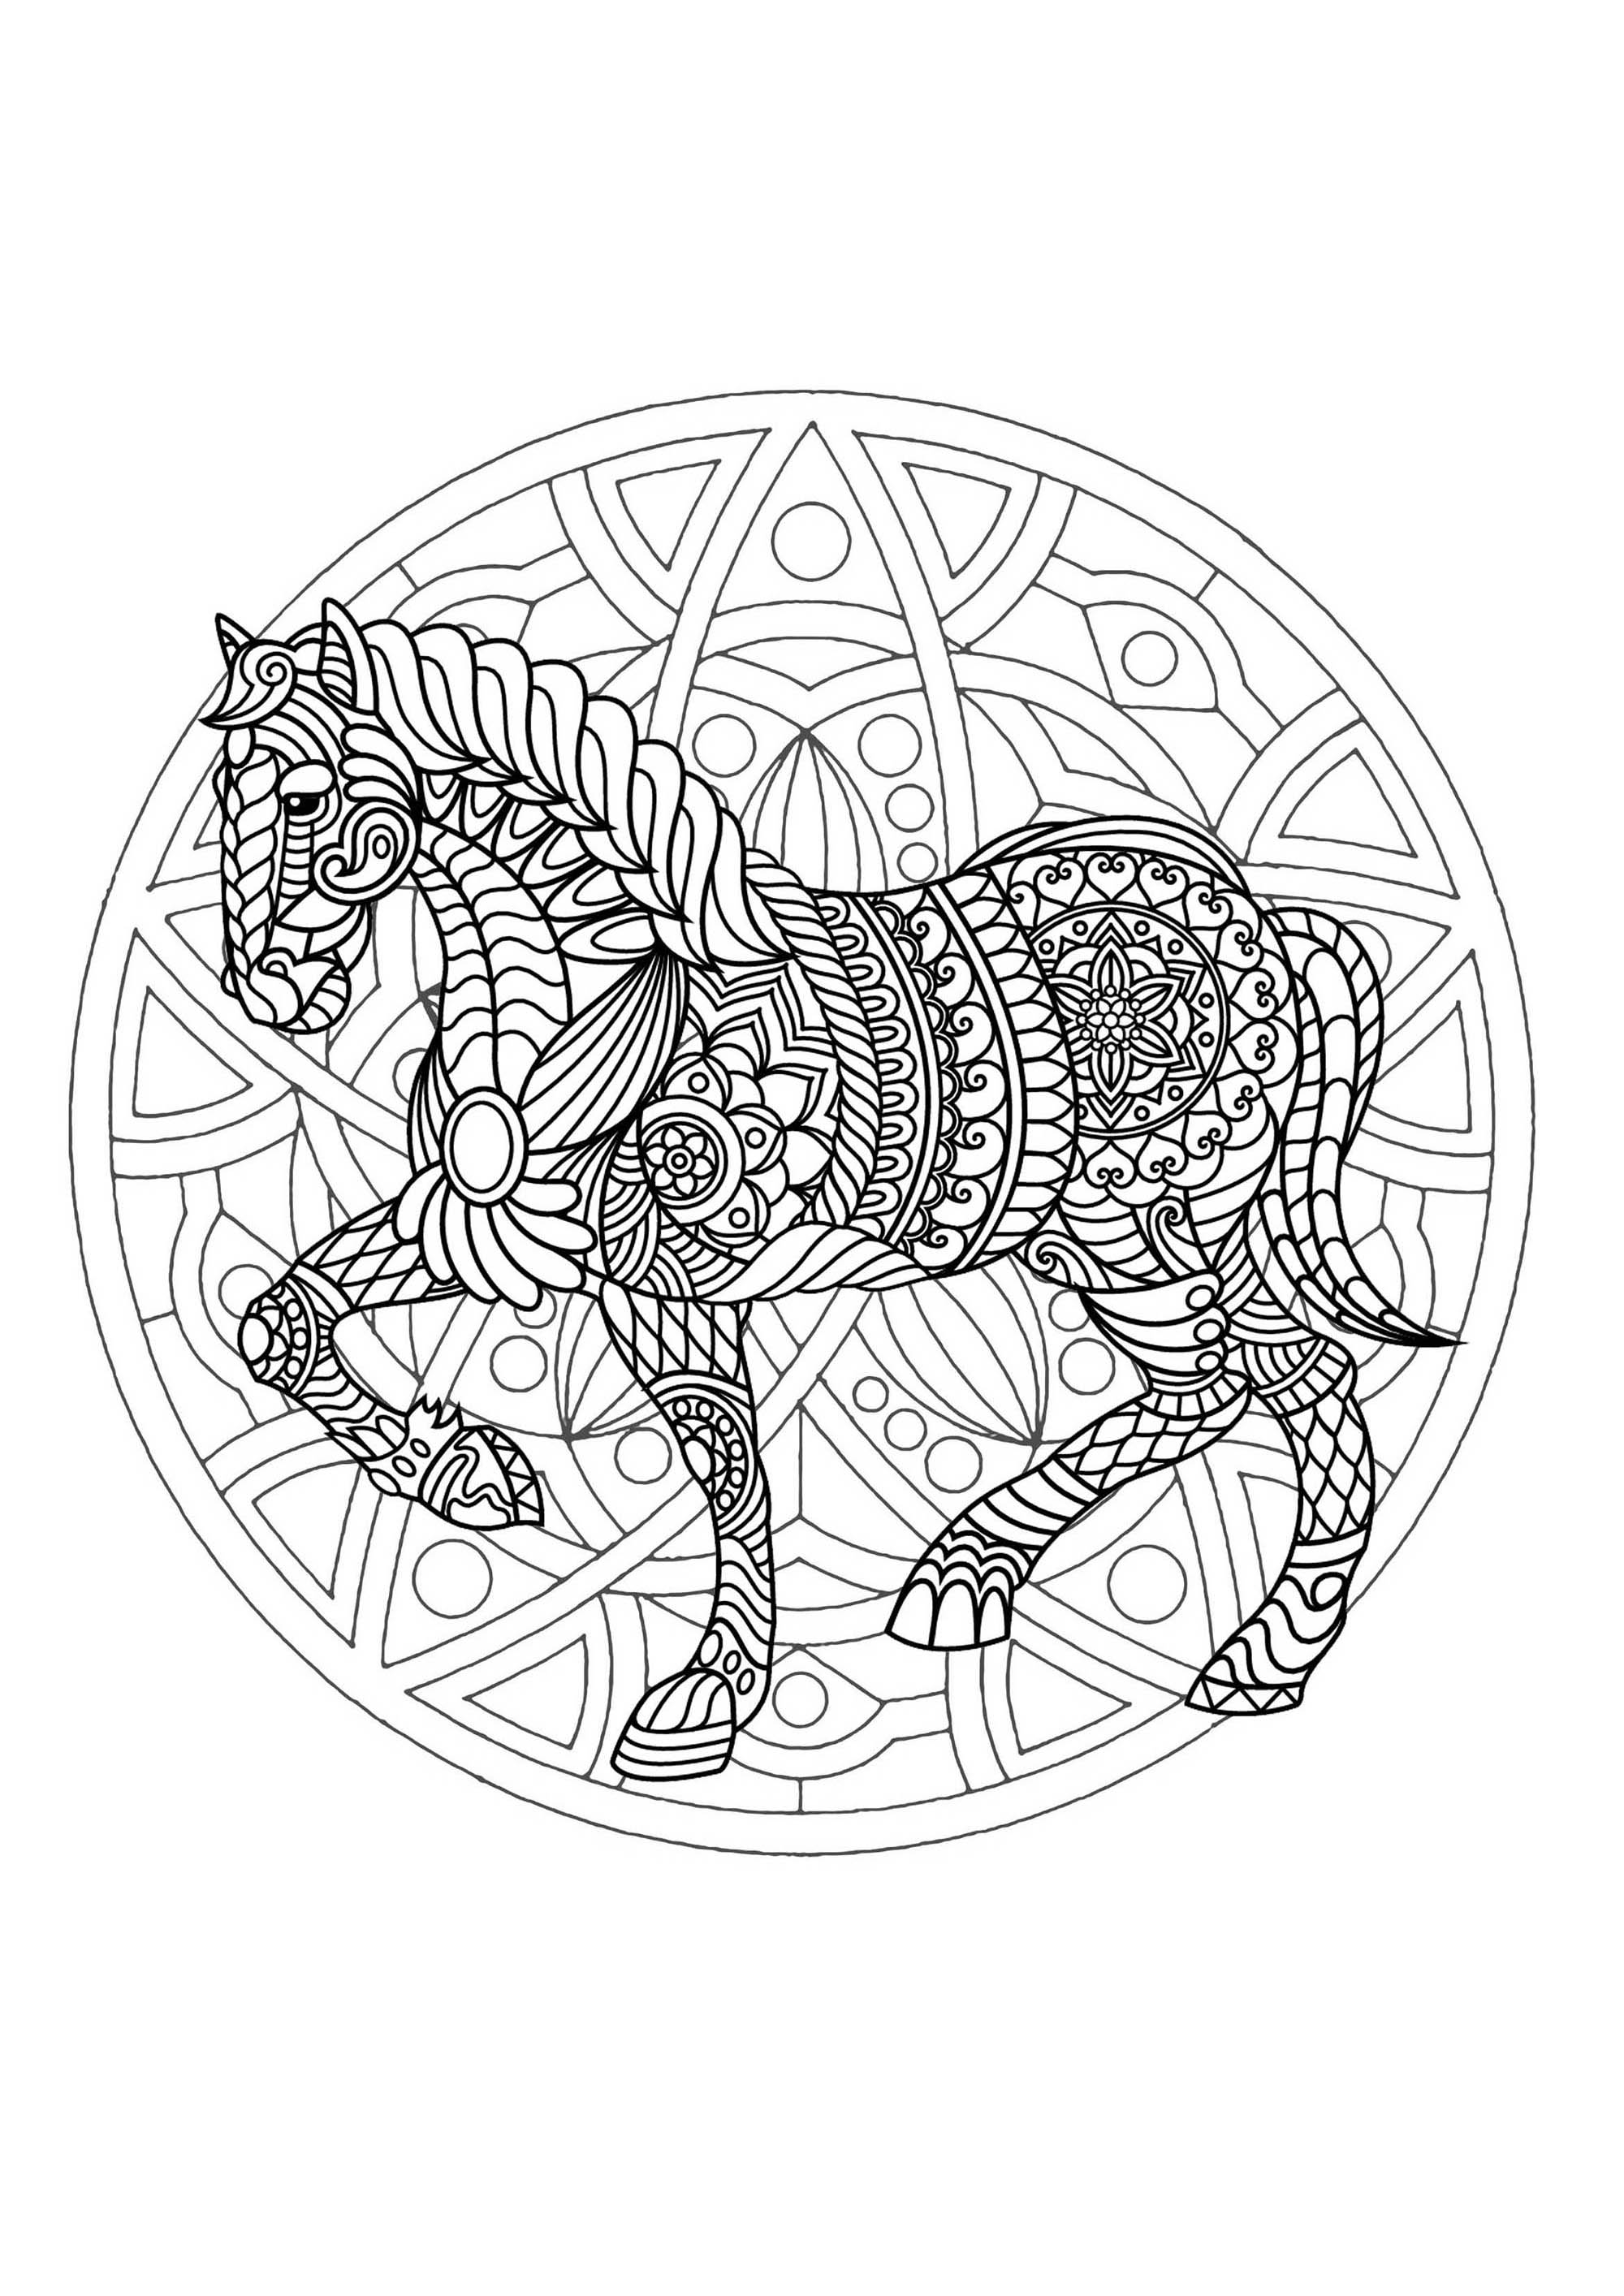 Ein wunderschönes Mandala-Ausmalbild mit einem Pferd, von hoher Qualität und Originalität. Es liegt an Ihnen, die passenden Farben auszuwählen.